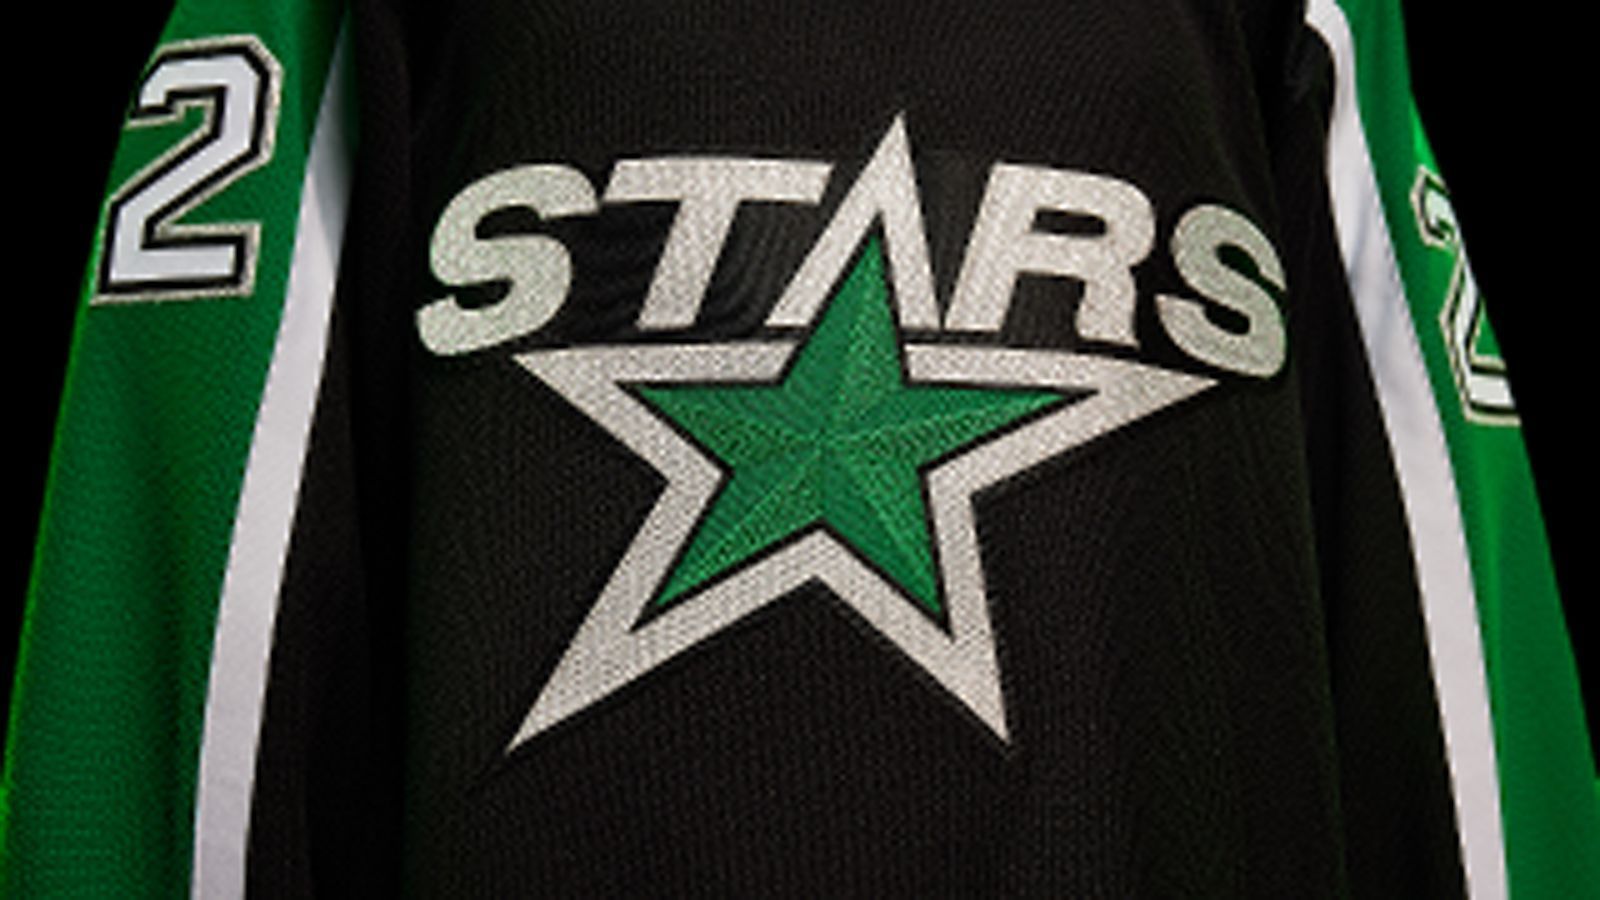 
                <strong>Dallas Stars</strong><br>
                Die Stars modernisieren das Trikot der Eröffnungssaison des Teams mit der aktuellen Farbpalette. Der Schriftzug "STARS" und das Logo verschmelzen zu einer Einheit, während die Schulteraufnäher Bilder des Bundesstaates Texas mit einem "D" enthalten, das den Standort Dallas markiert.
              